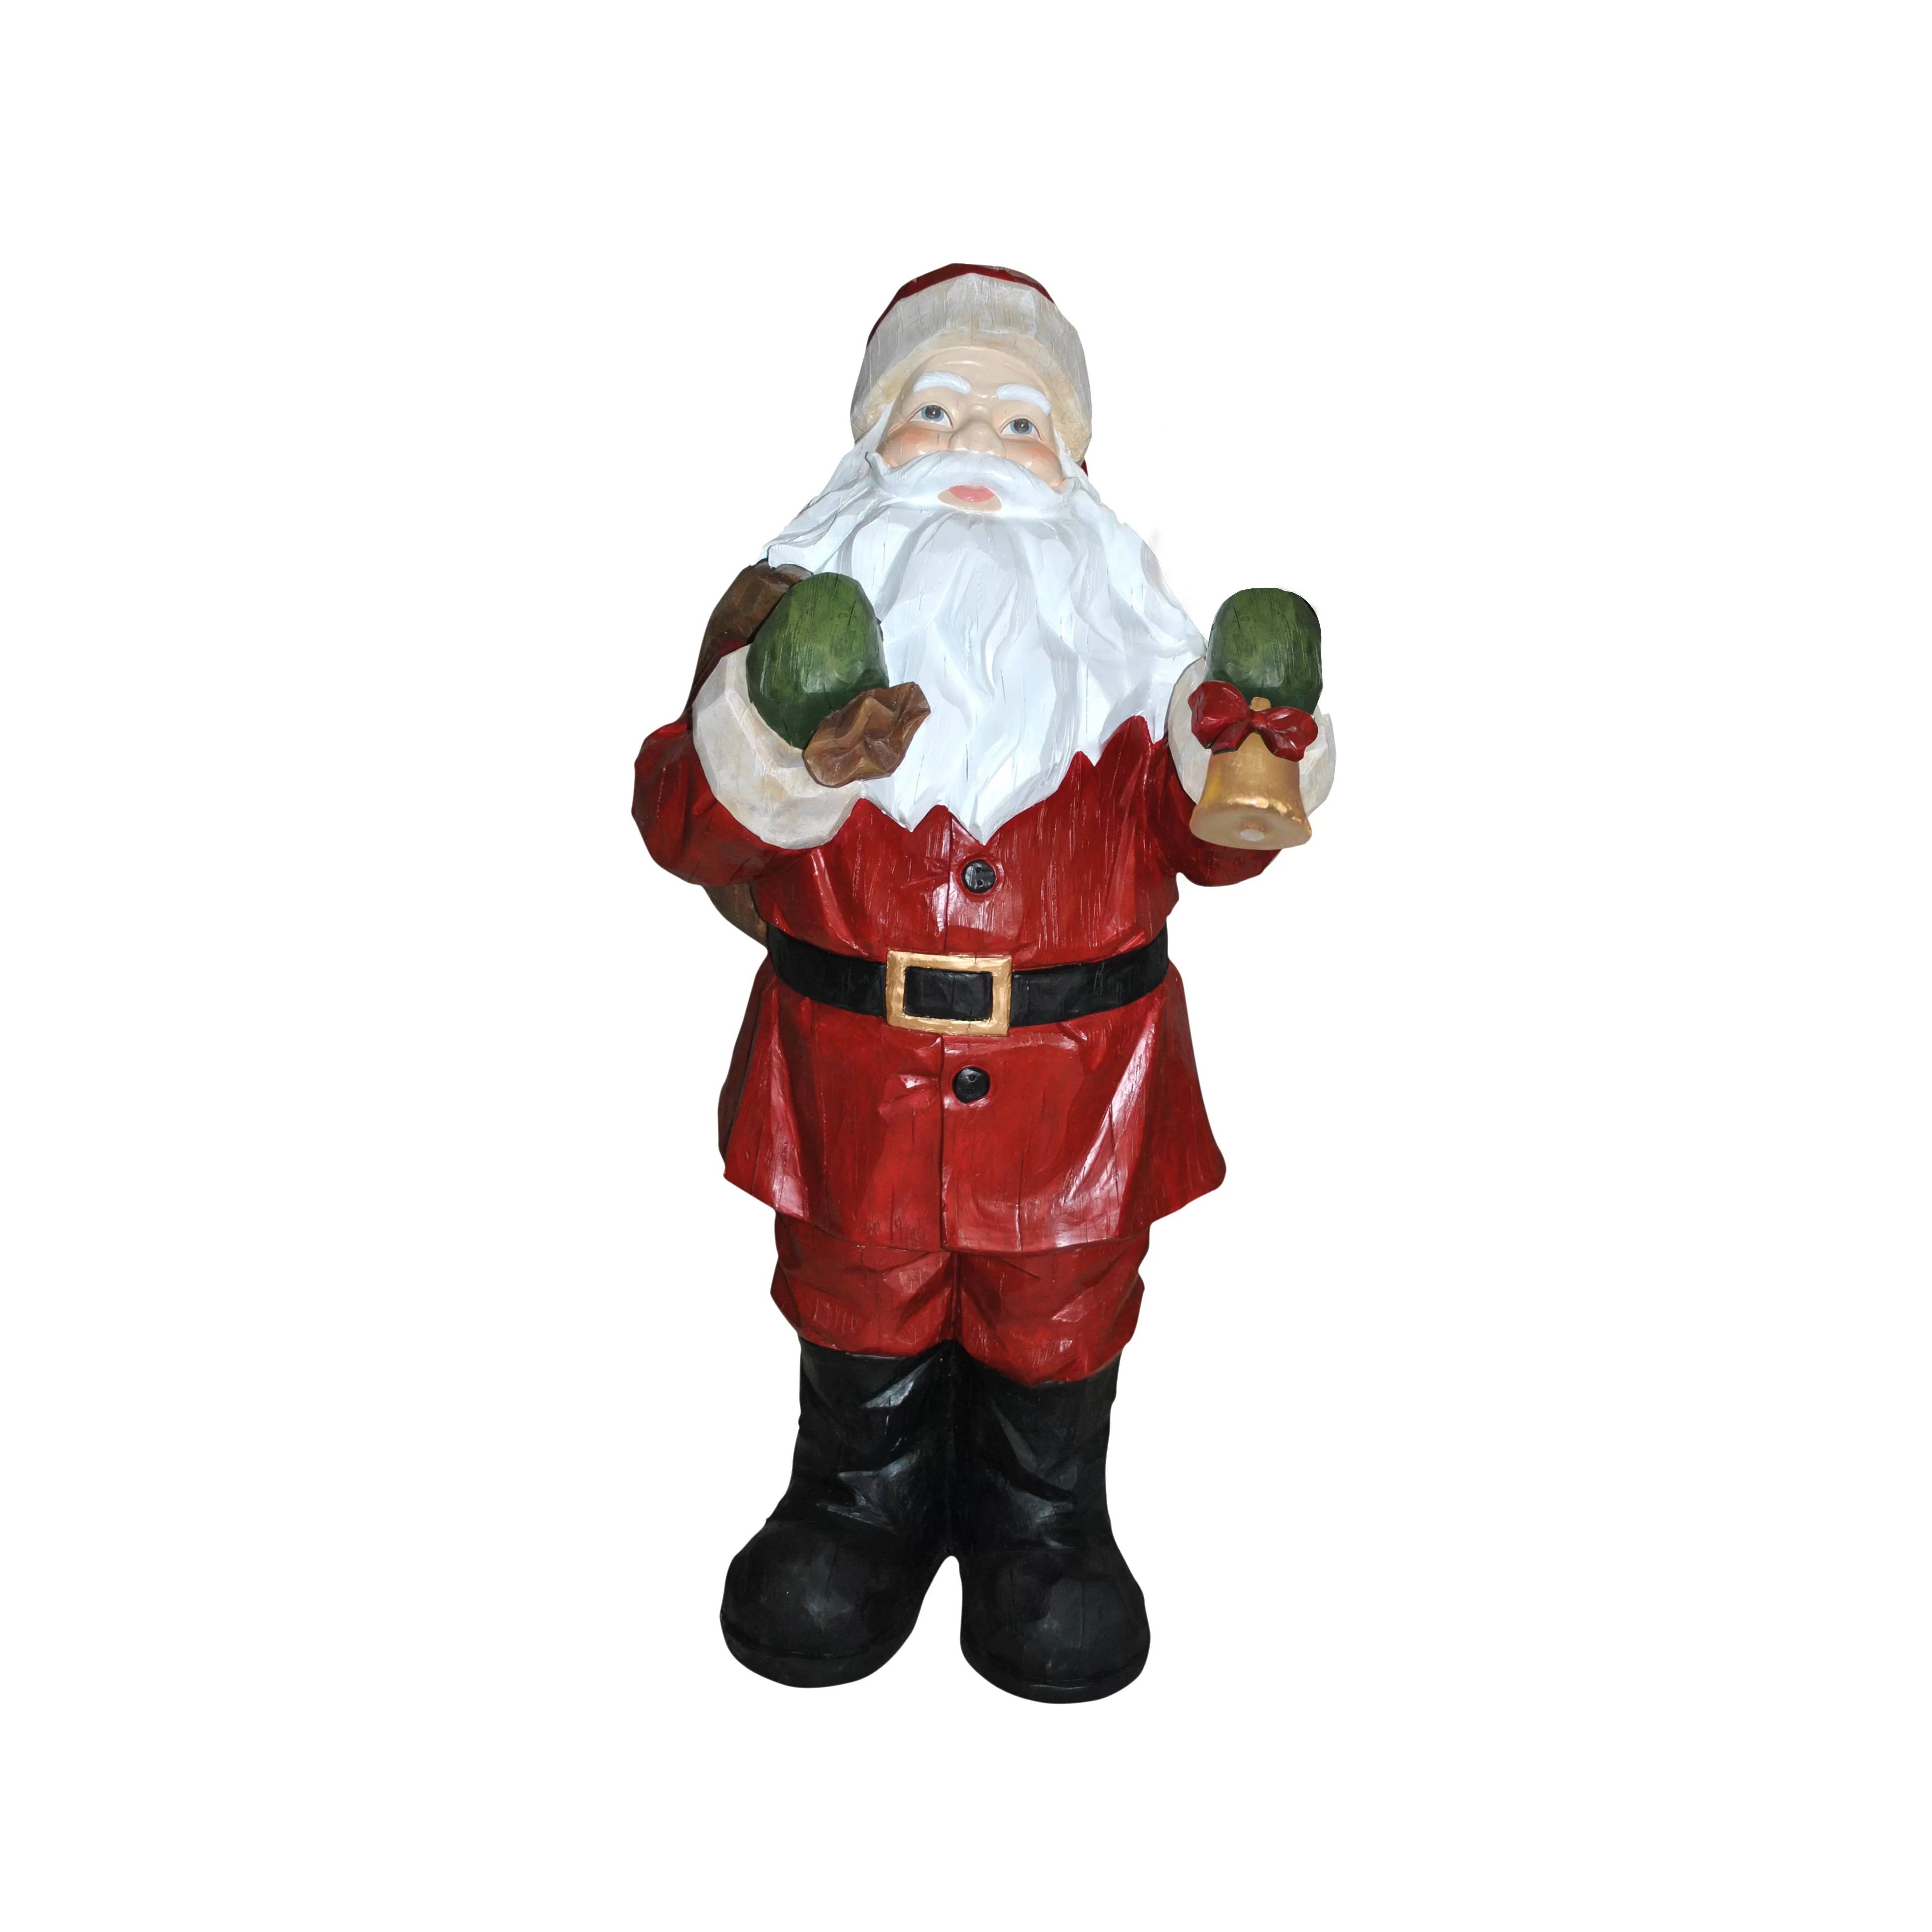 Վաճառվում է խեժի նյութից պատրաստված Սուրբ Ծննդյան զարդարանք բնական չափի բացօթյա Ձմեռ պապի արձան